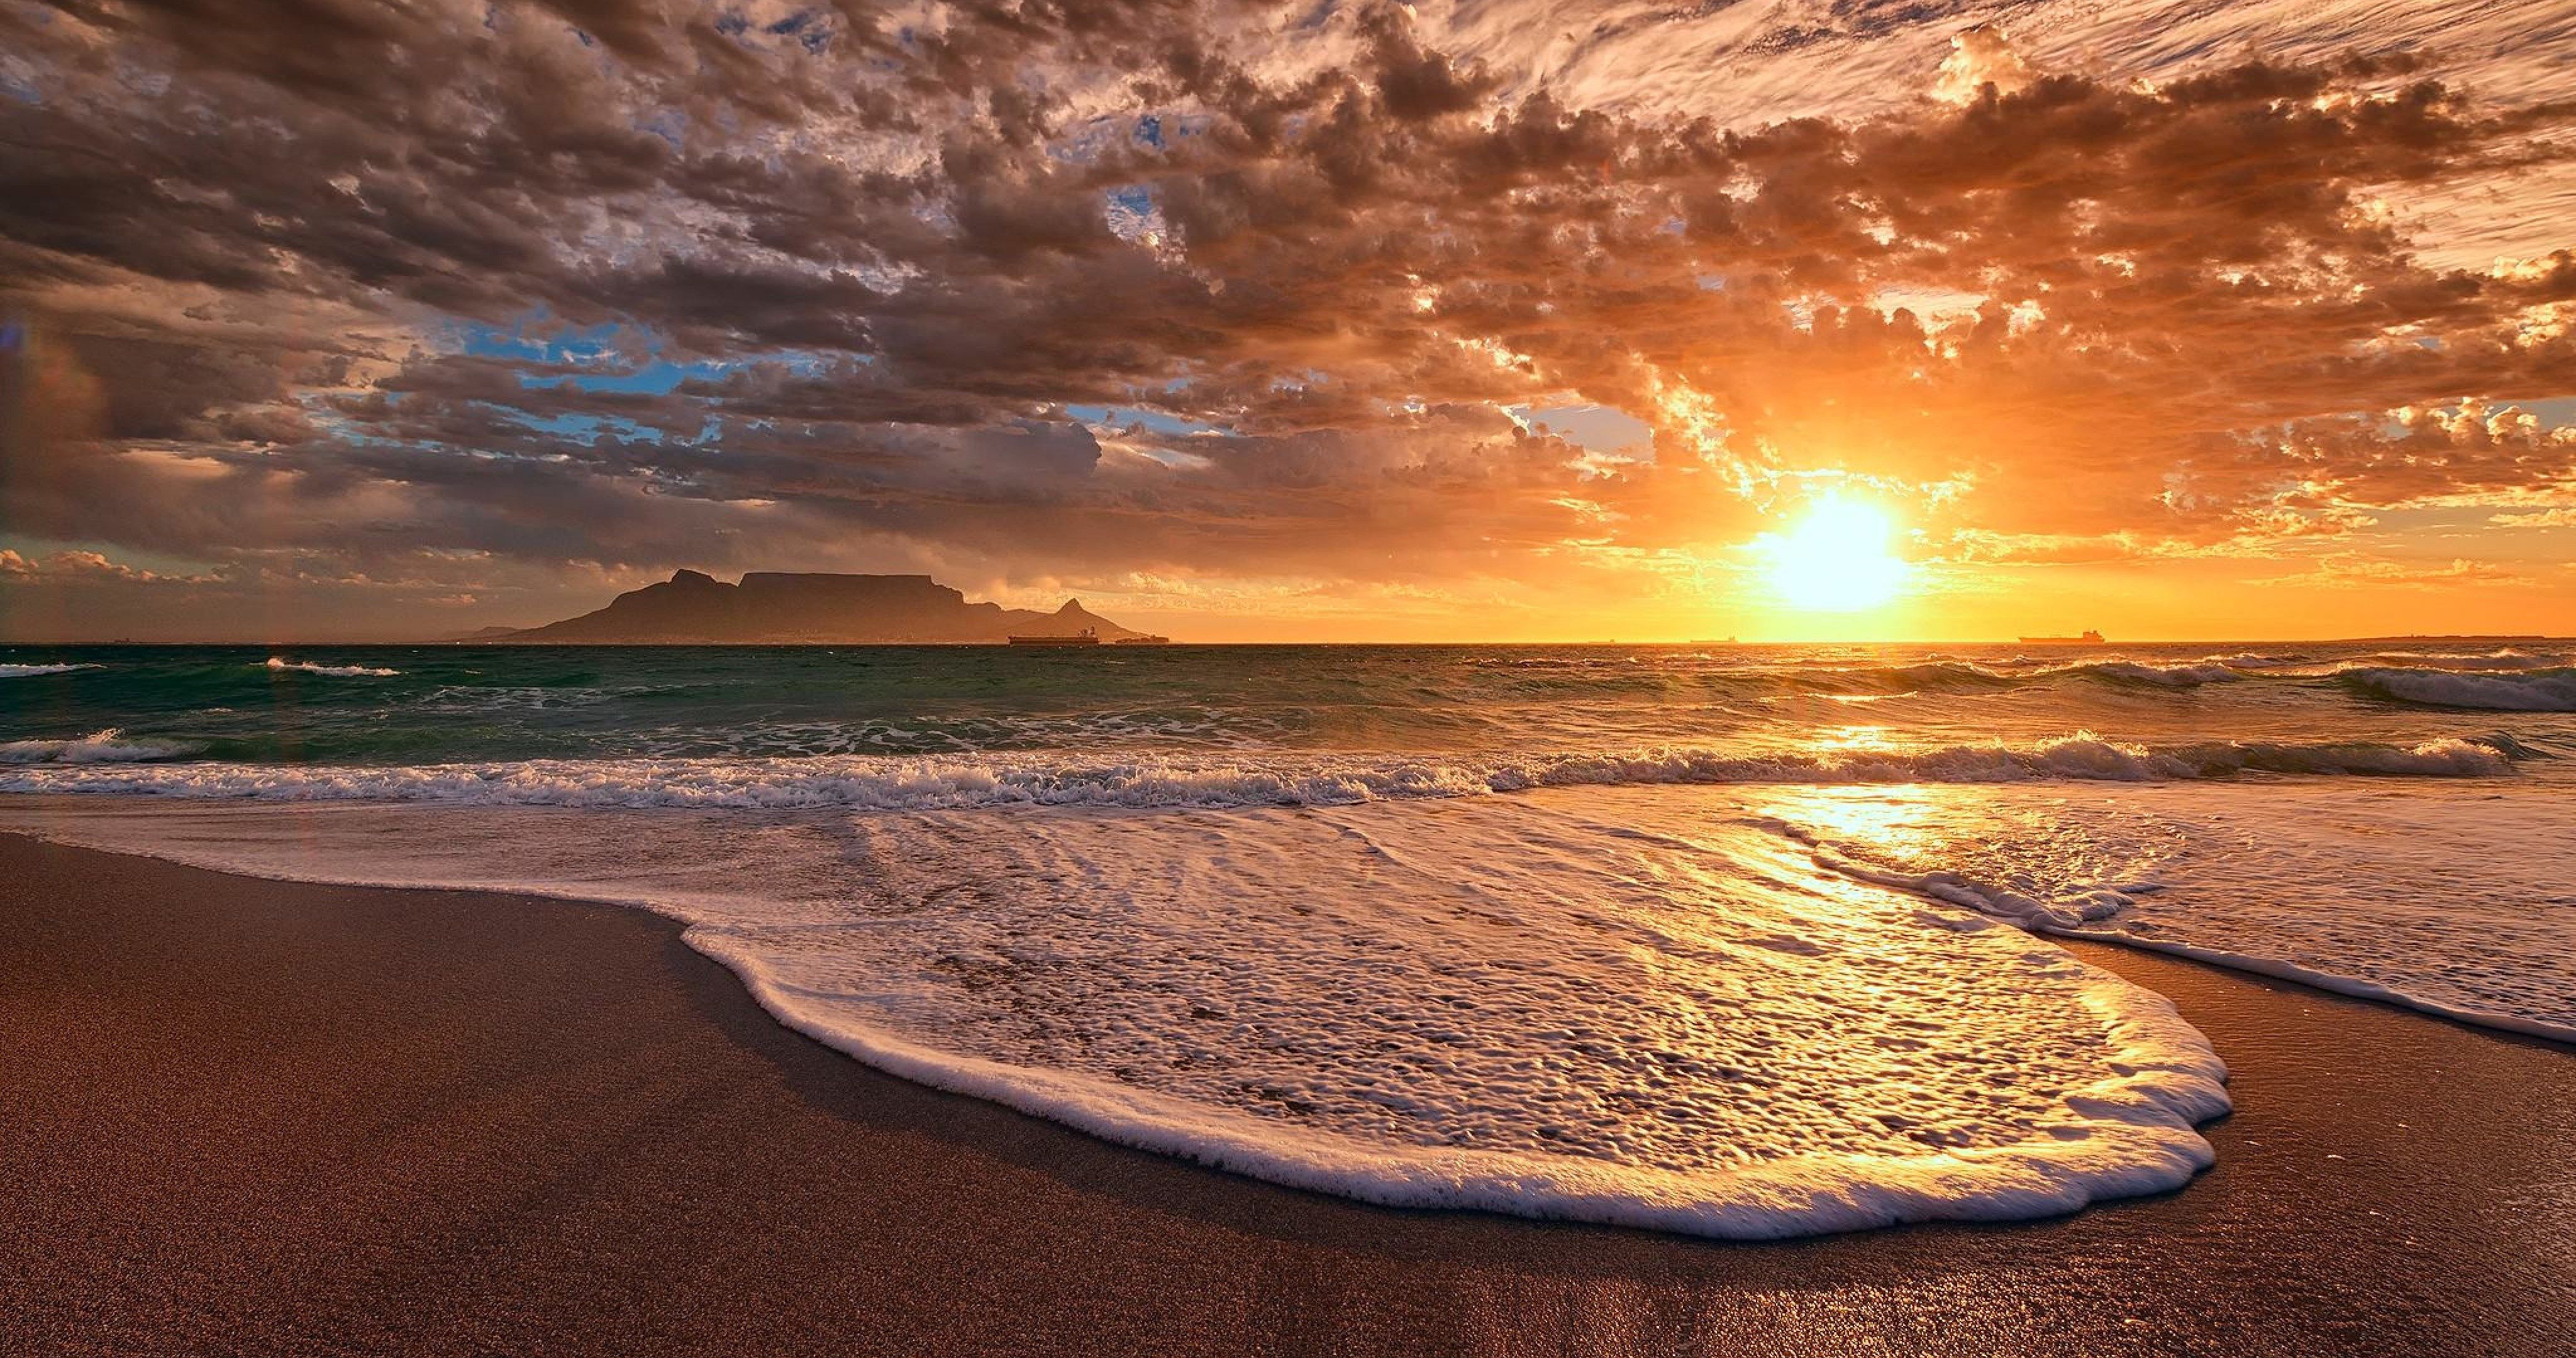 sea and sun 4k ultra HD wallpaper. Nature, Beautiful sunset, Sunset